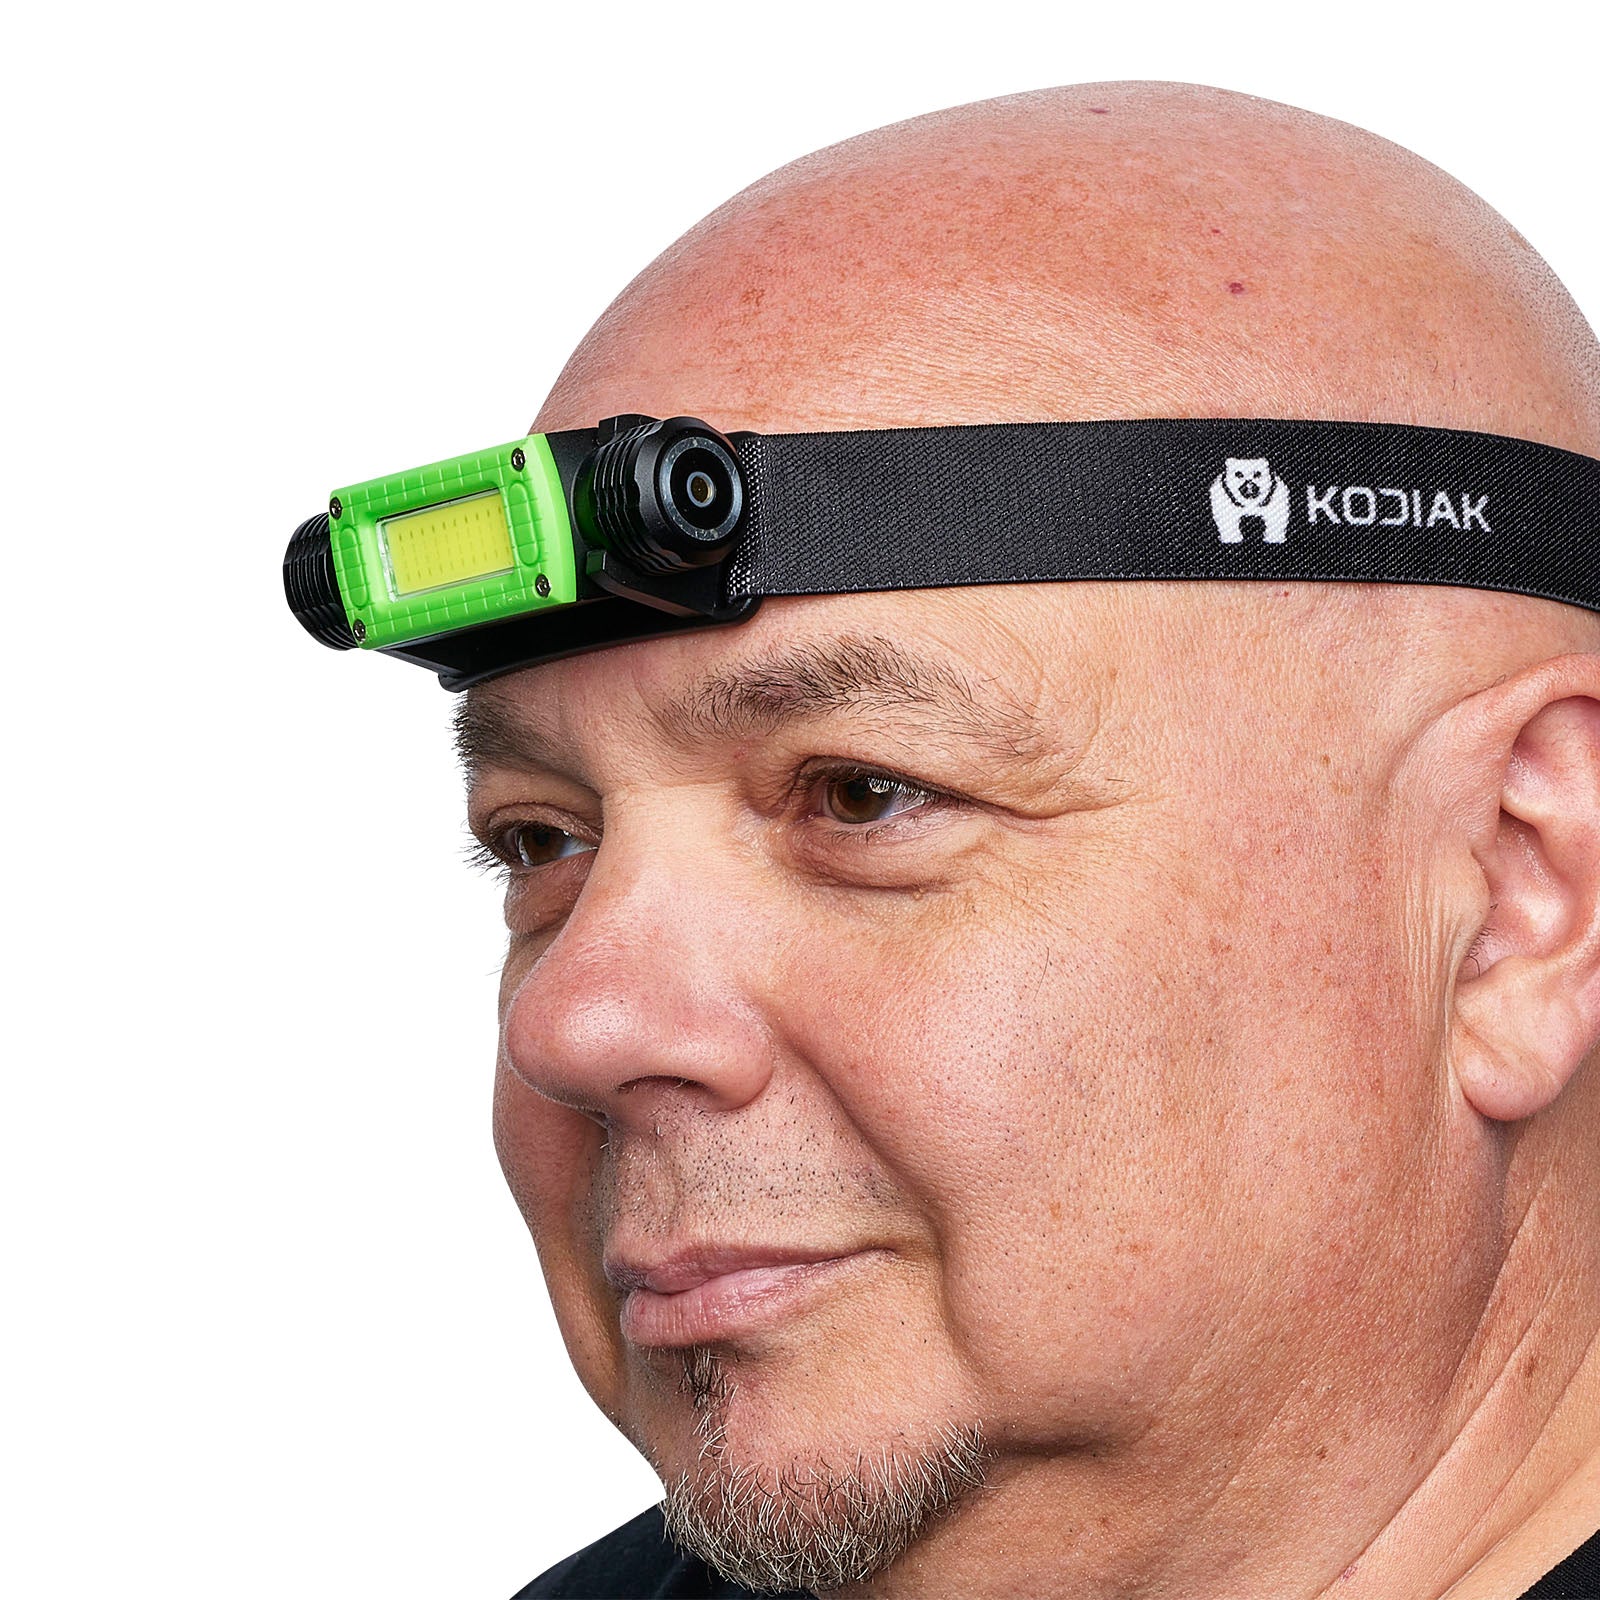 Kodiak 1000 Lumen Rechargeable Headlamp with Magnetic Charging - LitezAll - 2